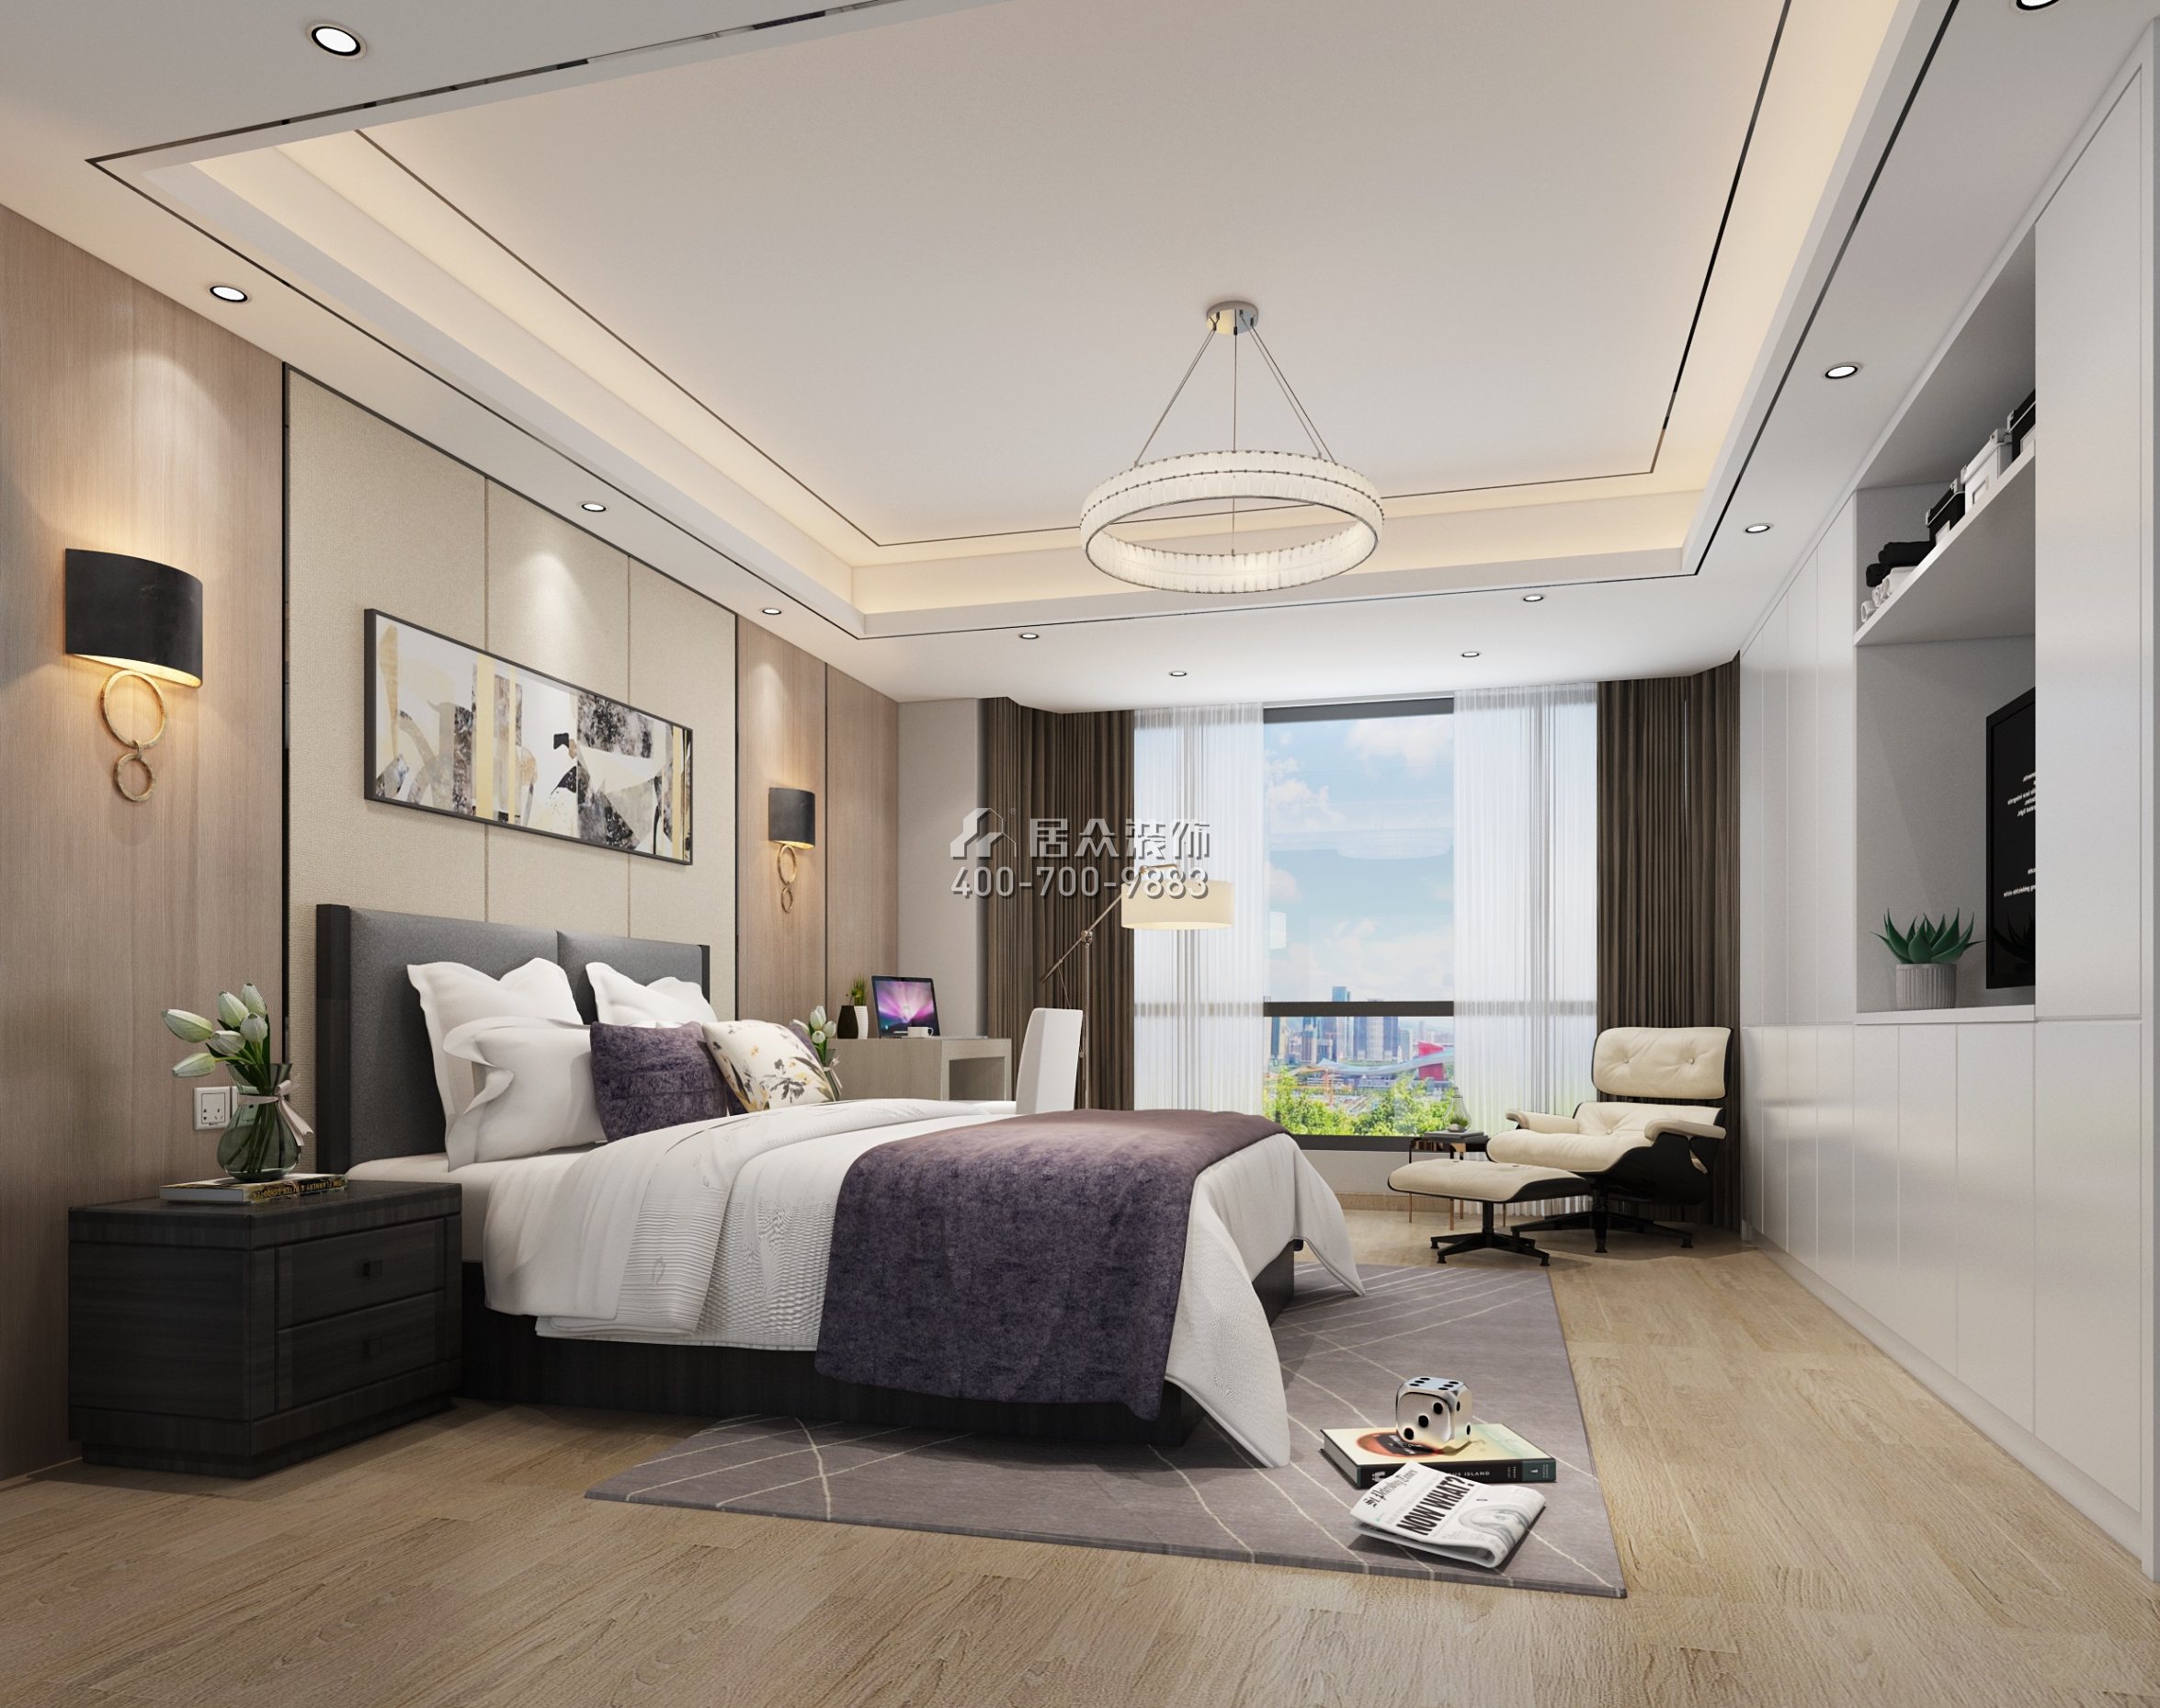 皇家翠苑150平方米现代简约风格平层户型卧室装修效果图